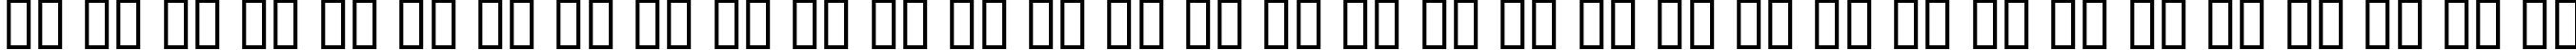 Пример написания русского алфавита шрифтом AlphaMaleModern